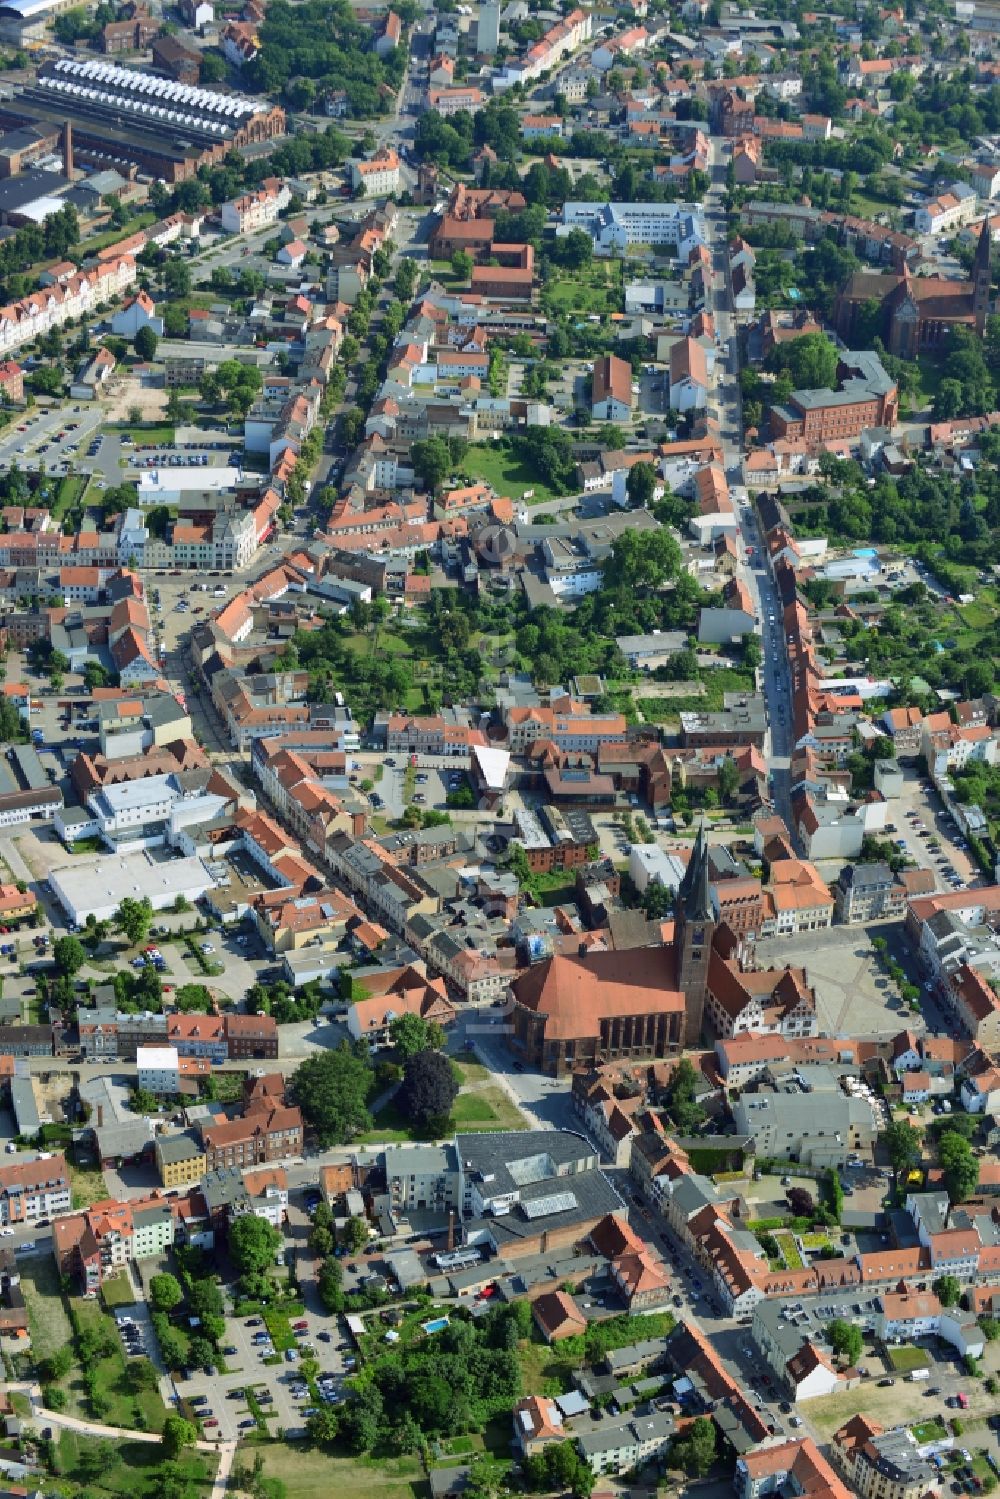 Stendal aus der Vogelperspektive: Stadtansicht der Innenstadt der Hansestadt Stendal im Bundesland Sachsen-Anhalt